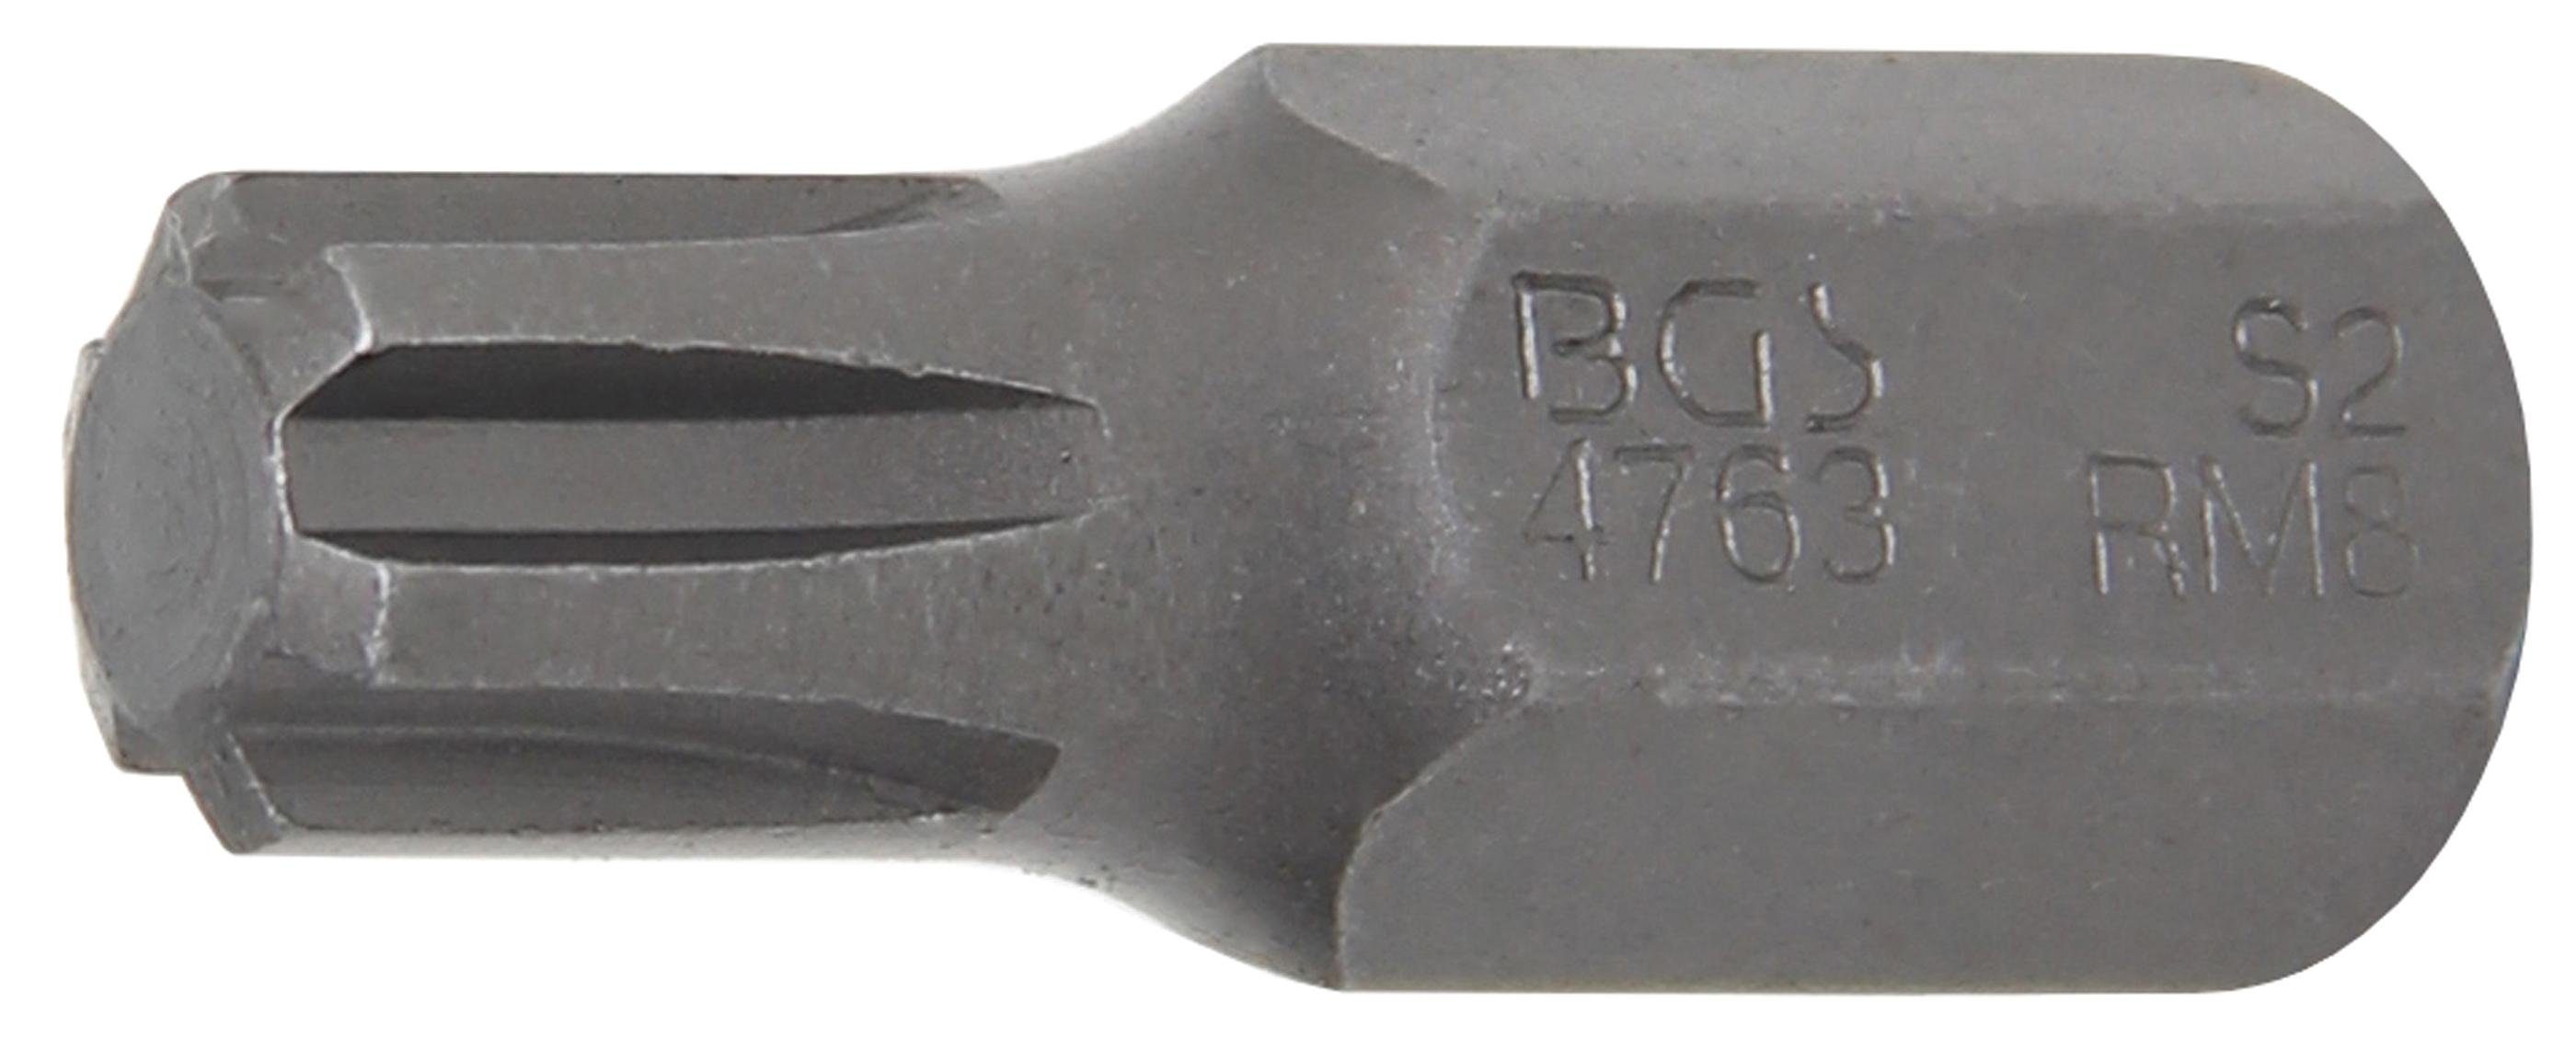 BGS technic Bit-Schraubendreher Bit, Antrieb Außensechskant 10 mm (3/8), Keil-Profil (für RIBE) M8